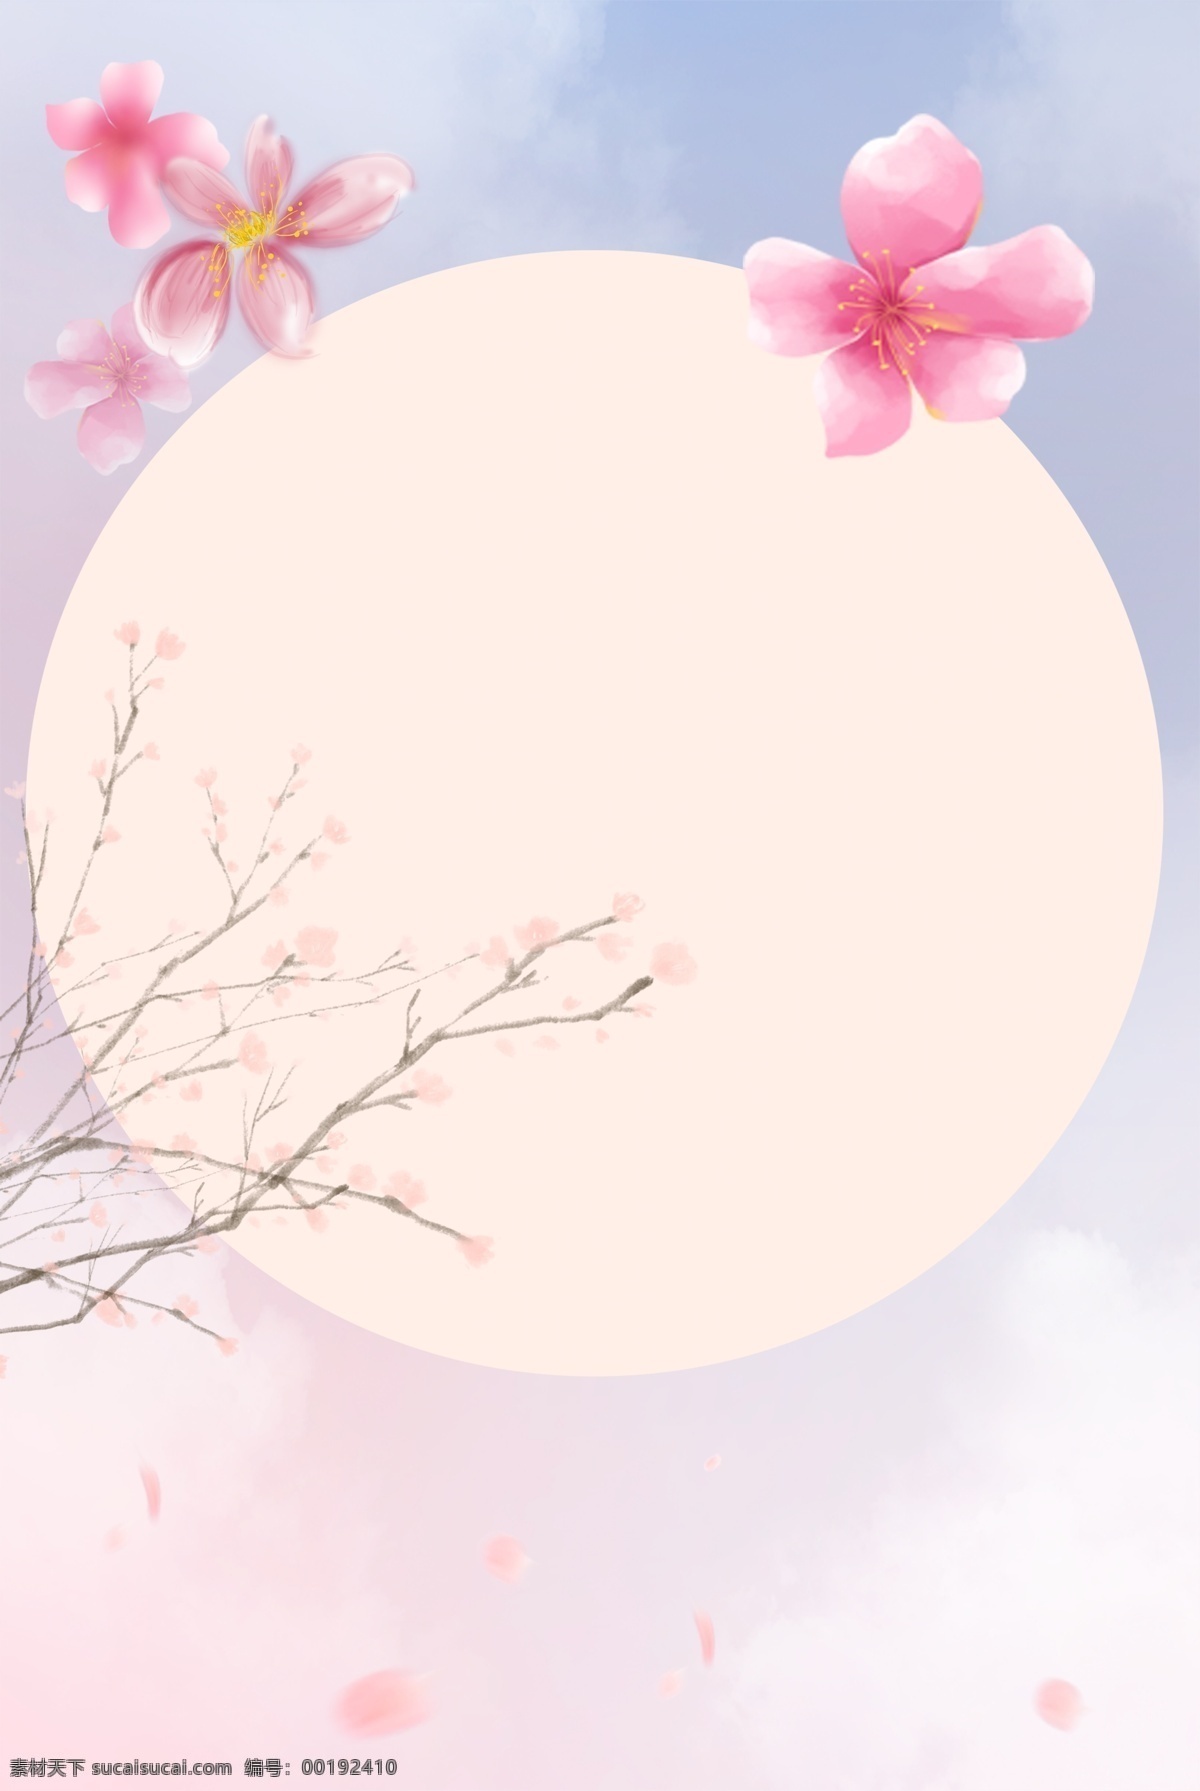 桃花 唯美 春天 清新 春季 上线 春季上线 桃花节 浪漫 手绘 中国风 简约